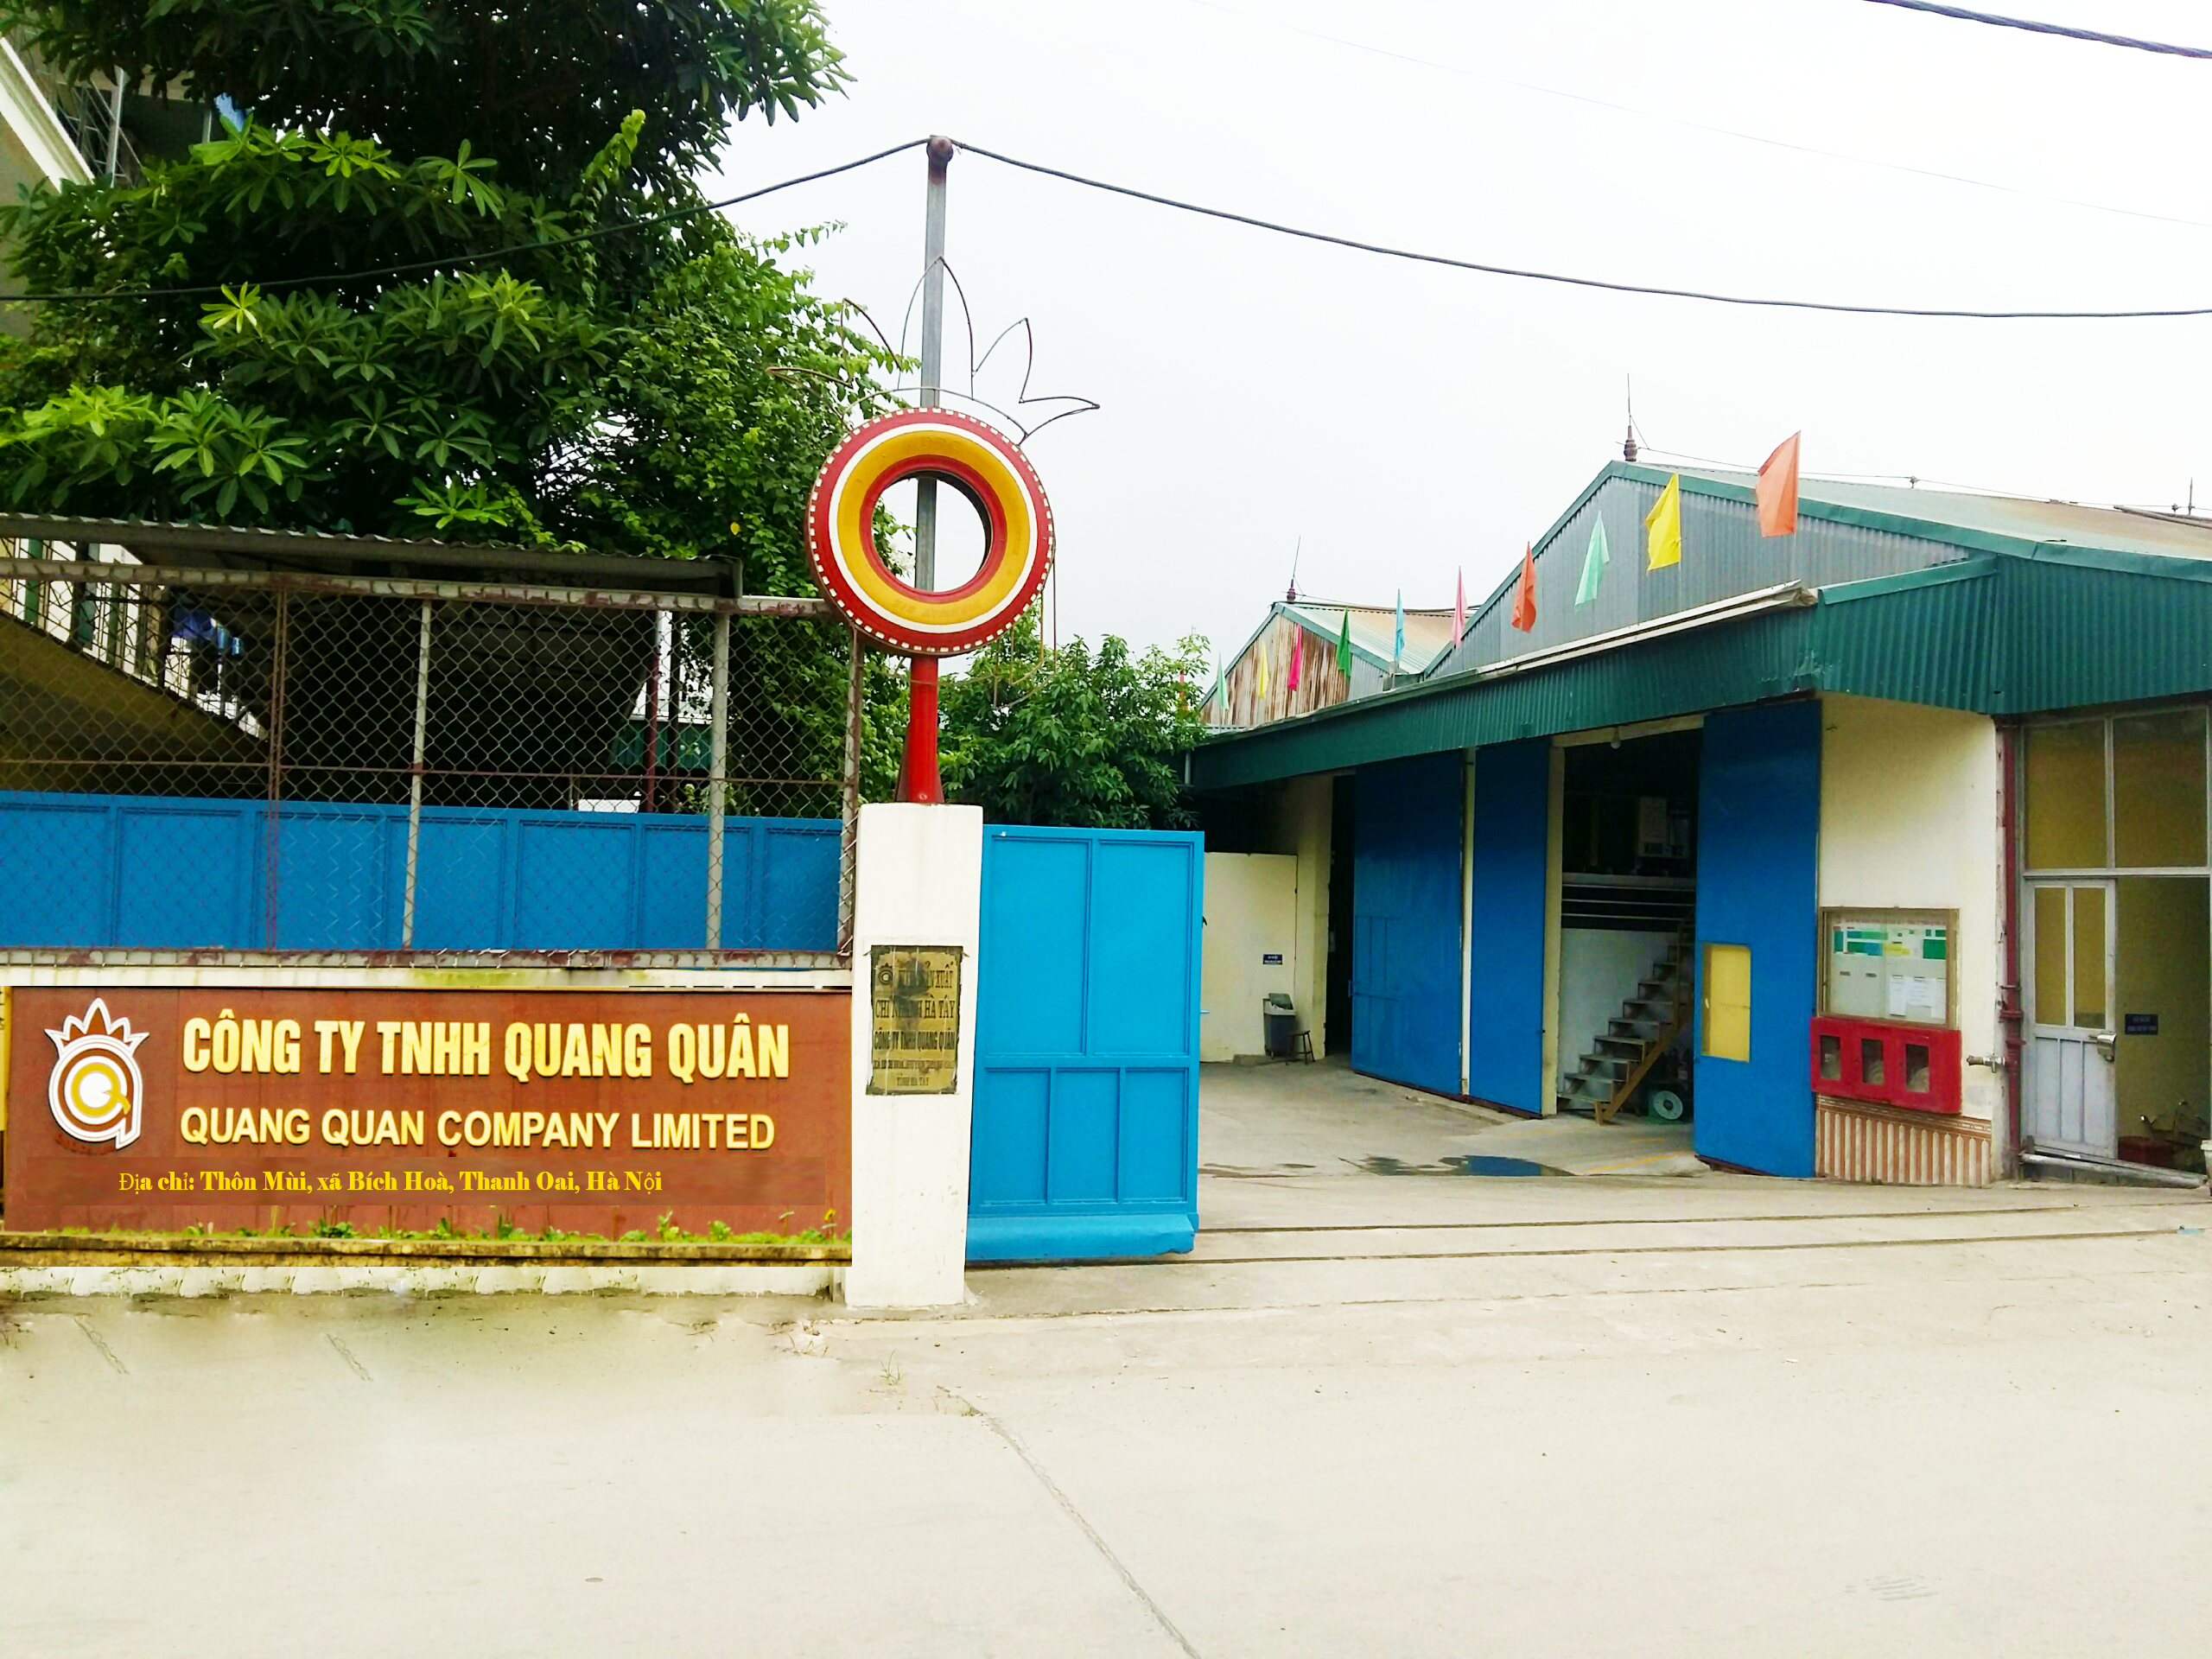 Công ty TNHH Quang Quân - Hà Tây